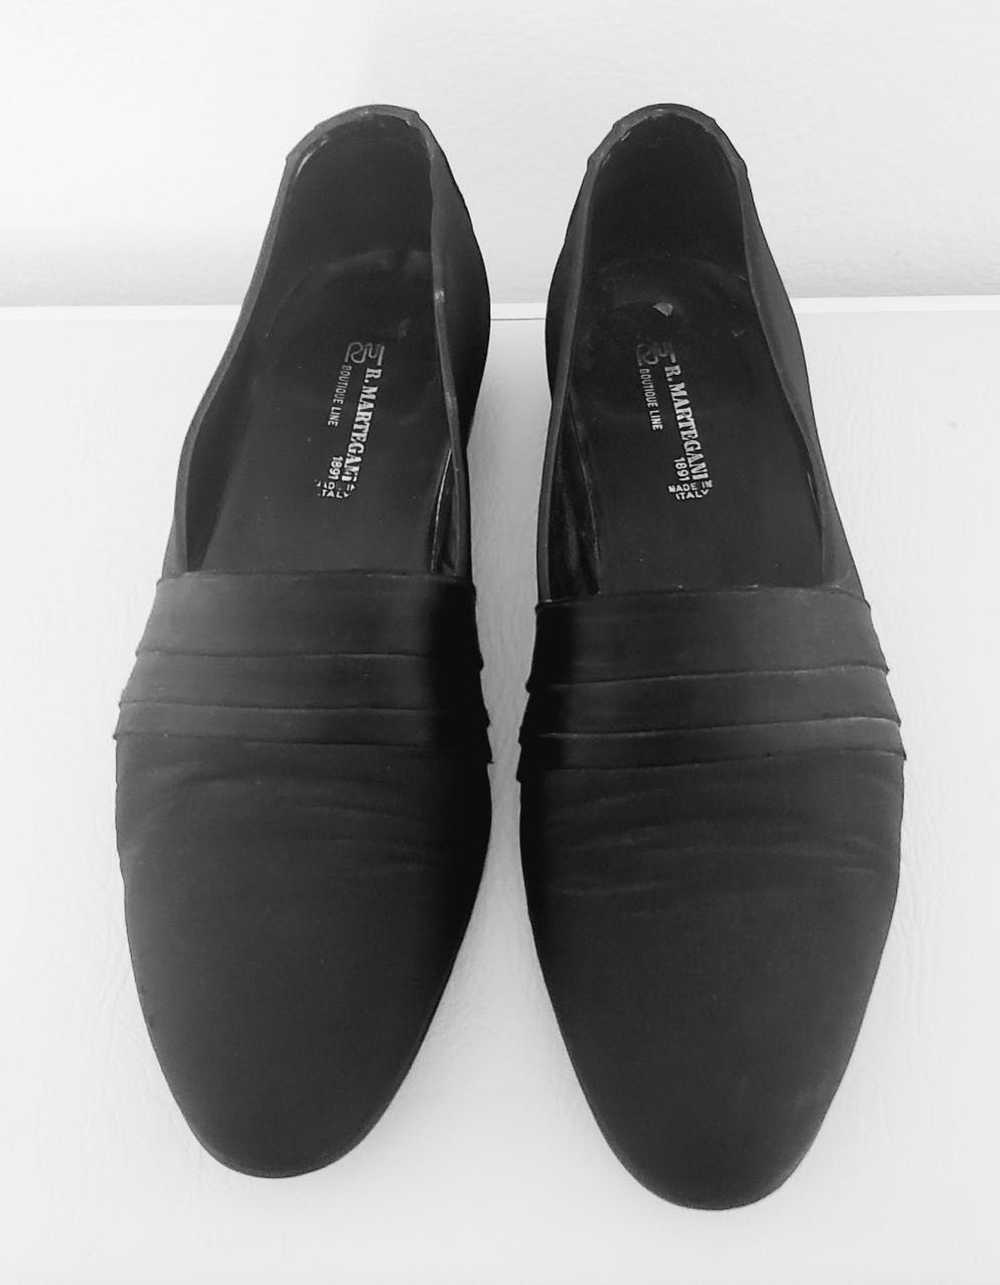 Vintage R Martegani shoes 11 black satin evening … - image 4